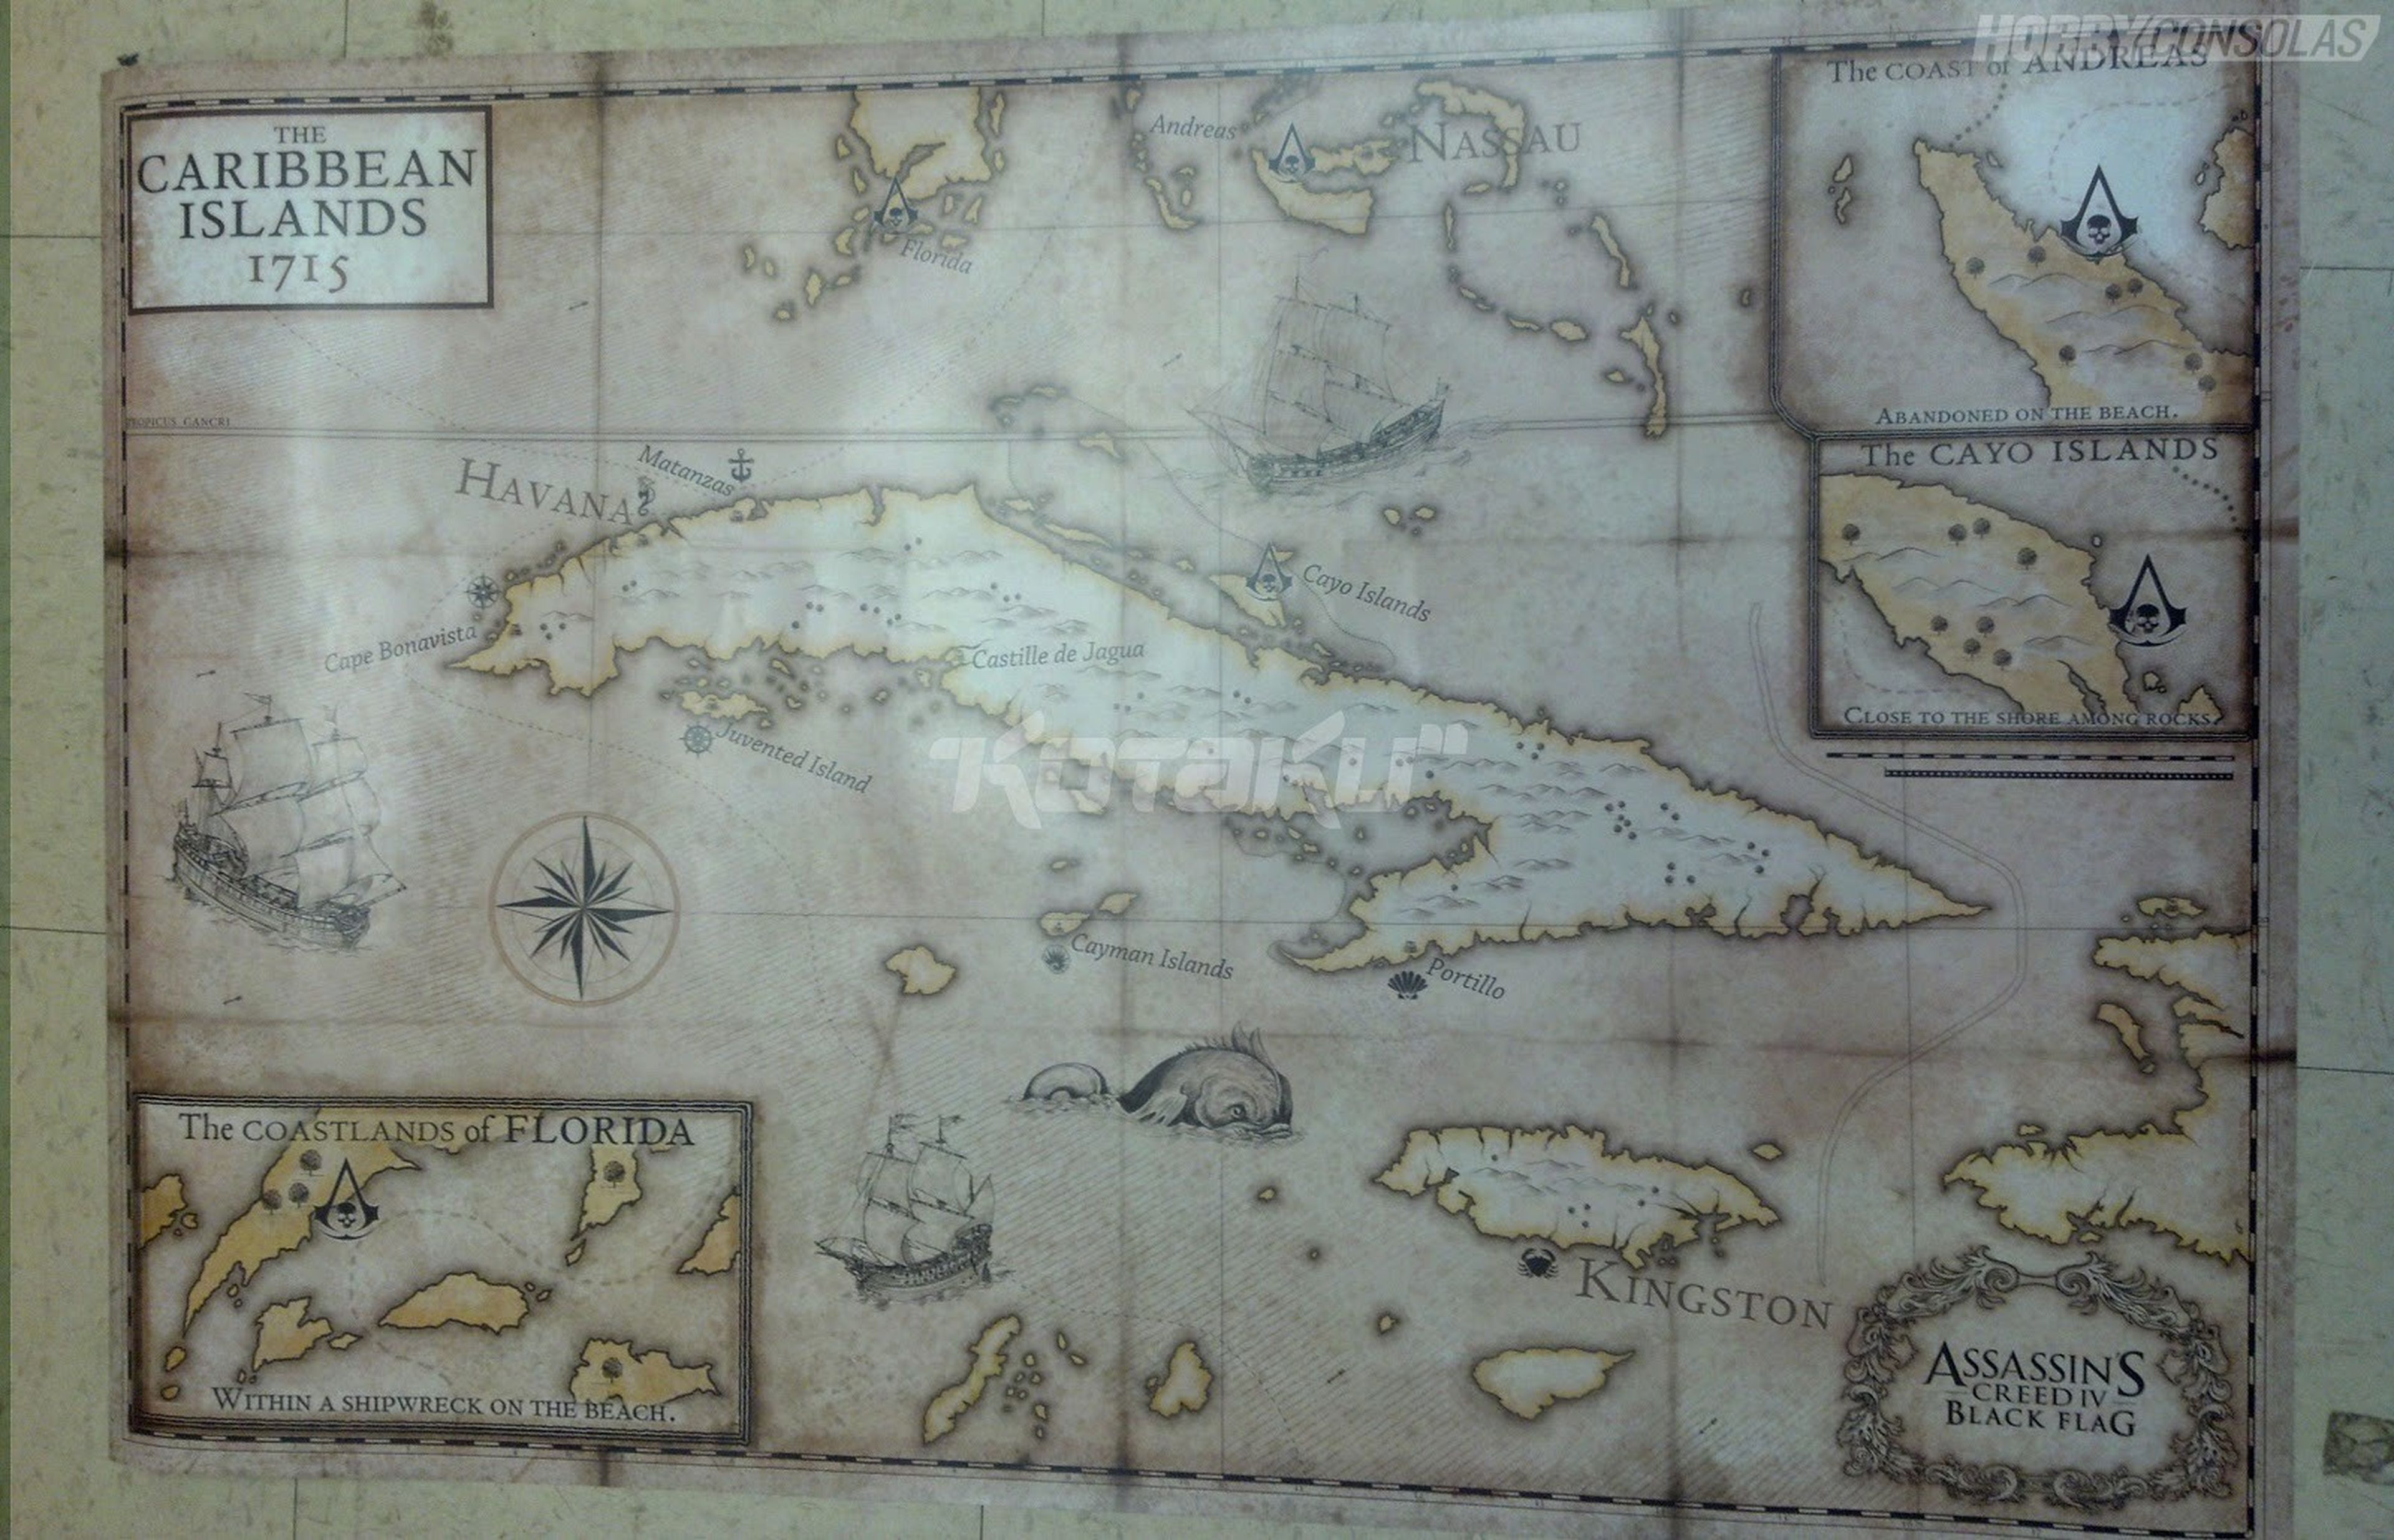 Assassin's Creed 4 Black Flag en el Caribe